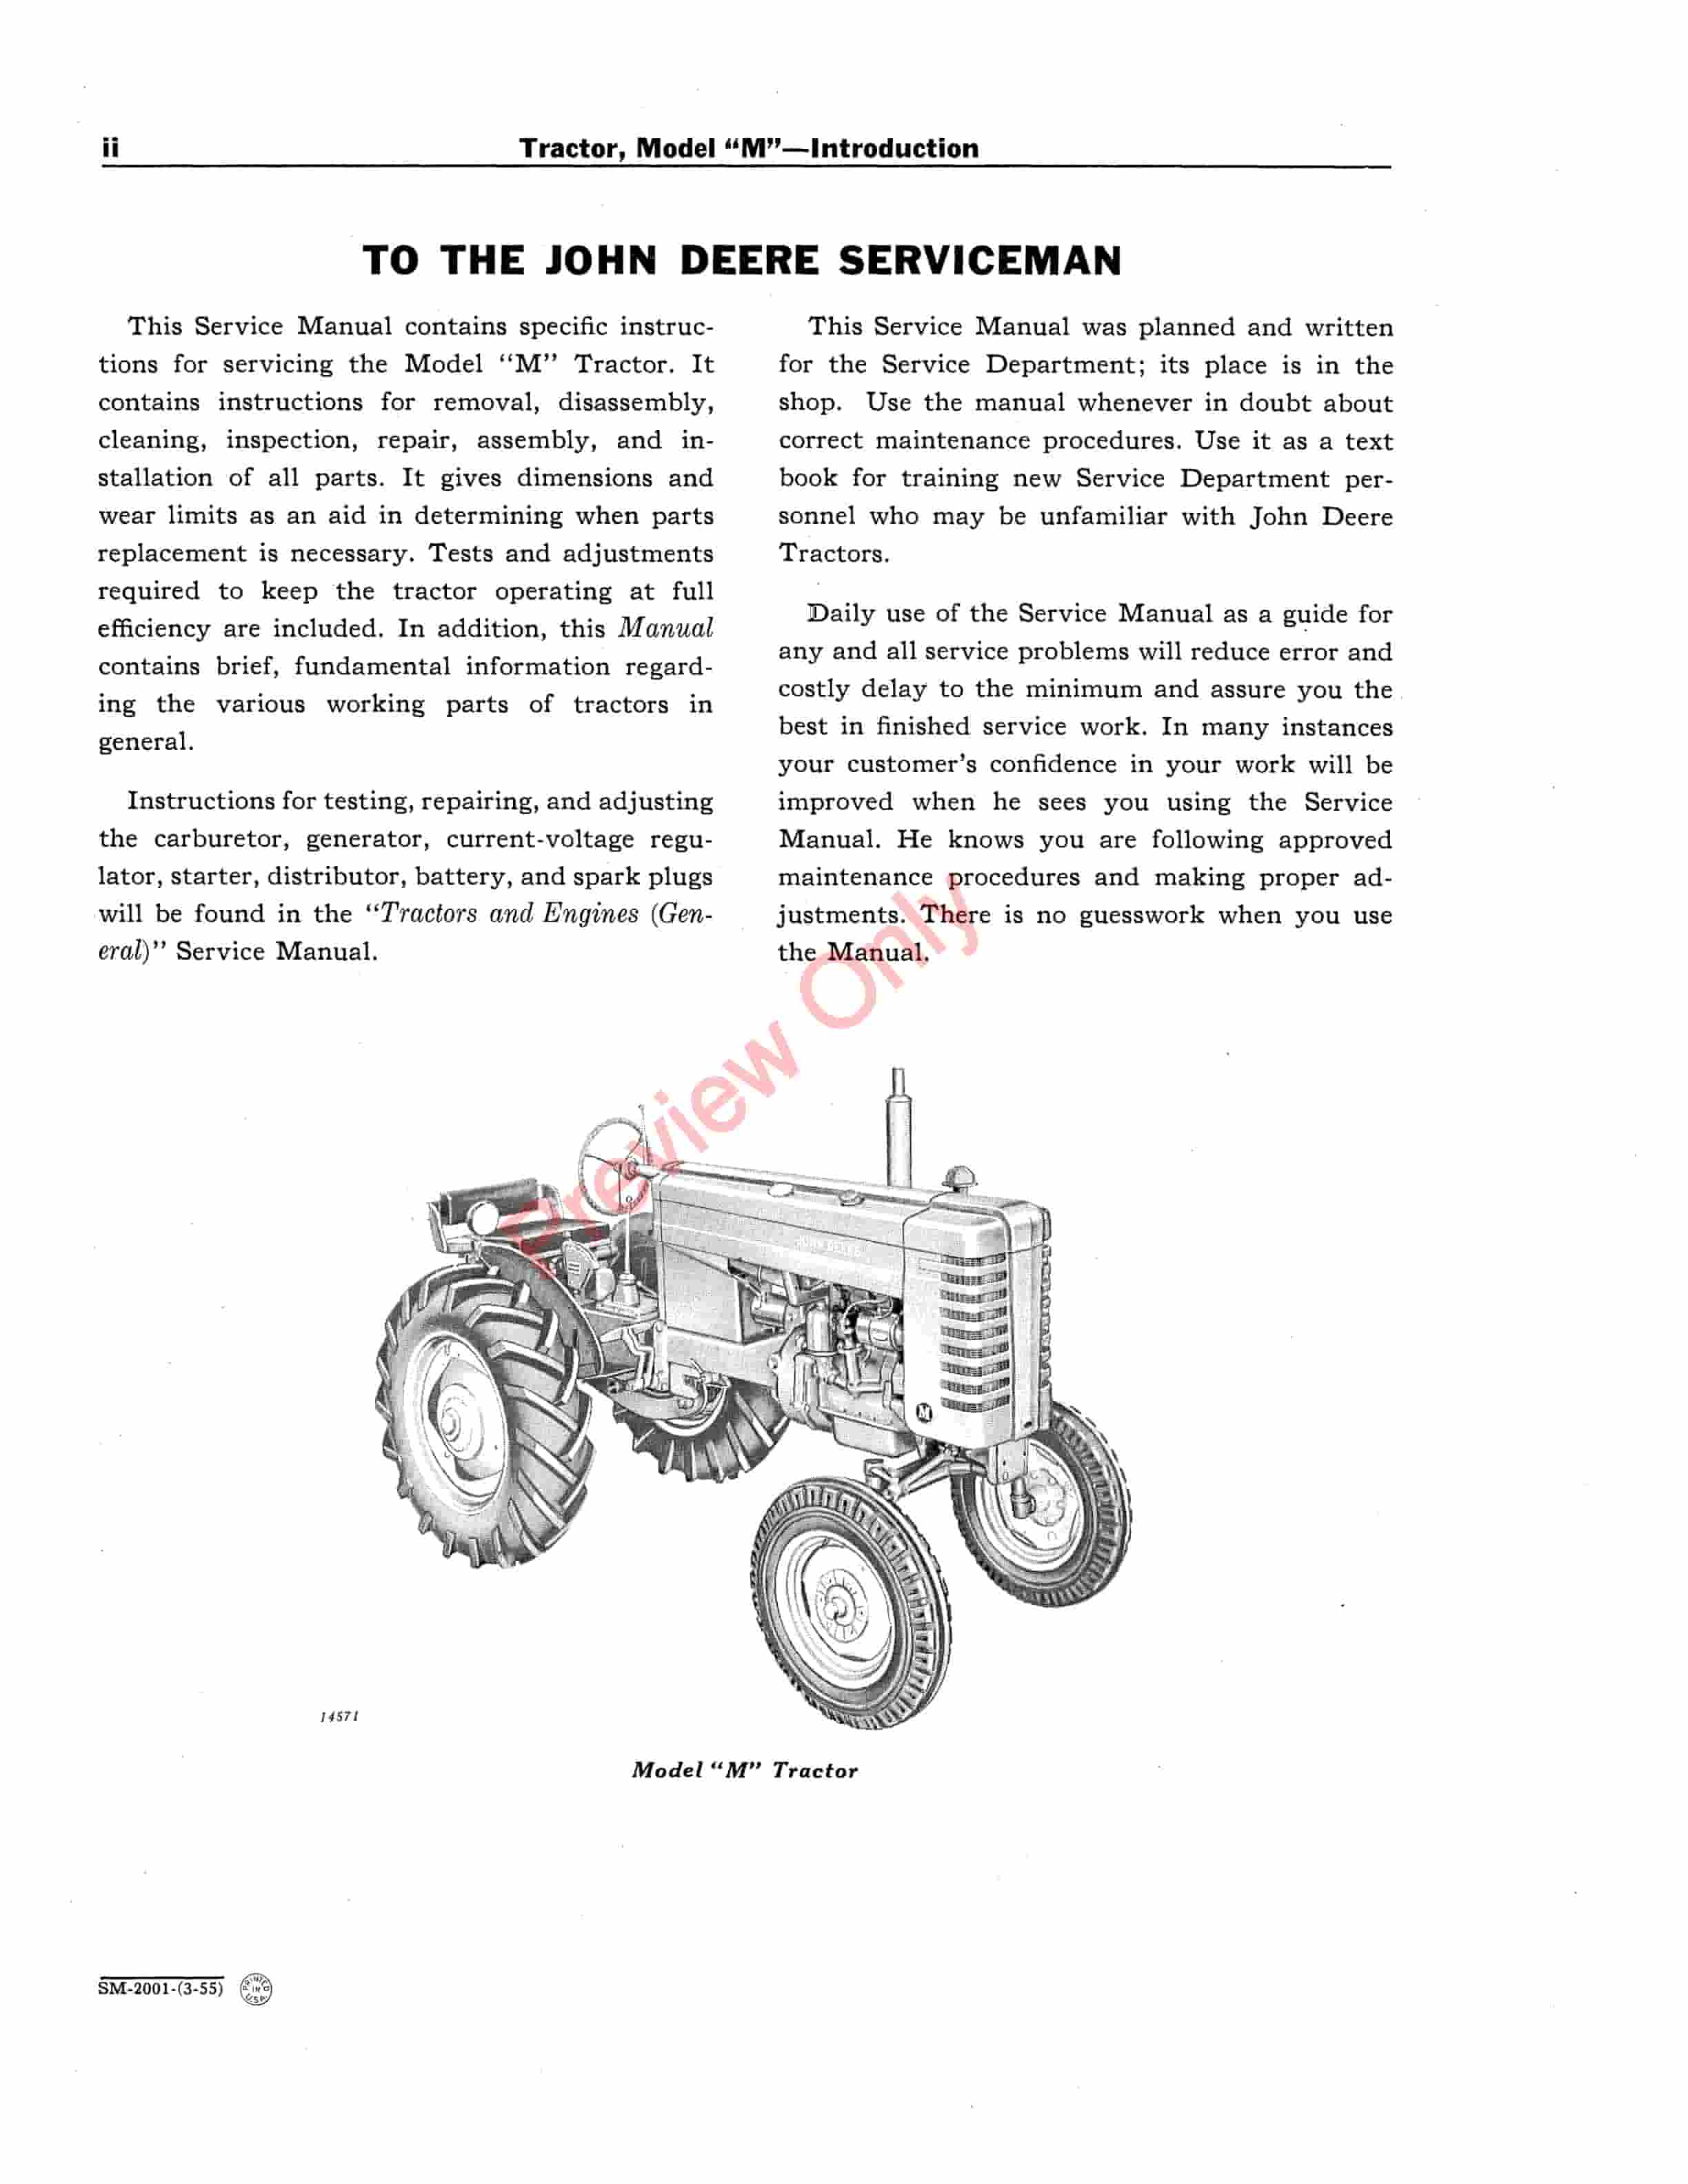 John Deere Model M Tractors Service Manual SM2001 19-4